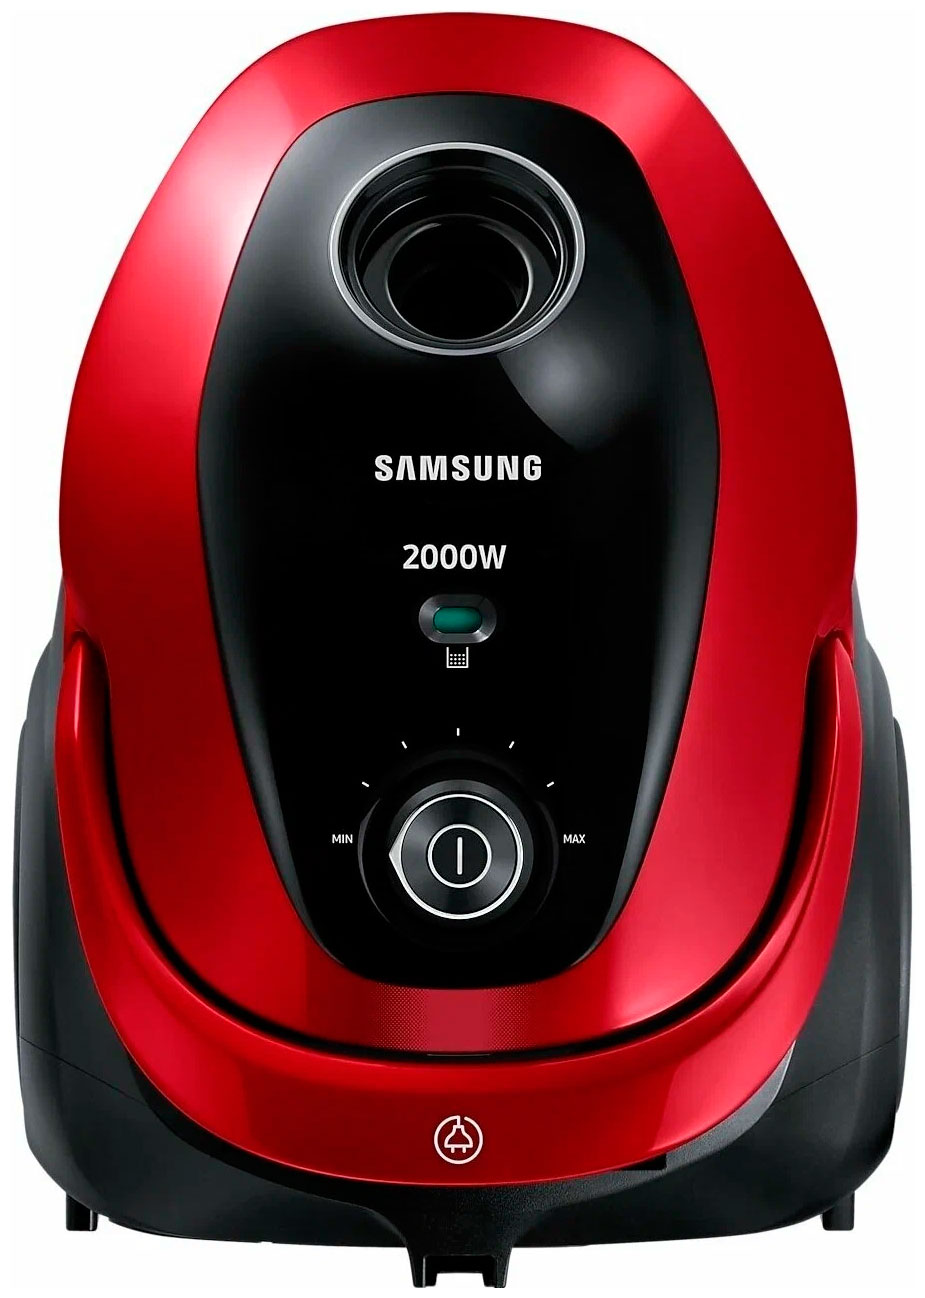 Пылесос Samsung V-C20M253AWR красный, черный 6 ступенчатая ручка переключения передач 25117566267 авто 6 ступенчатая ручка переключения передач универсальная замена для bmw e46 e90 e91 e92 x1 x3 x5